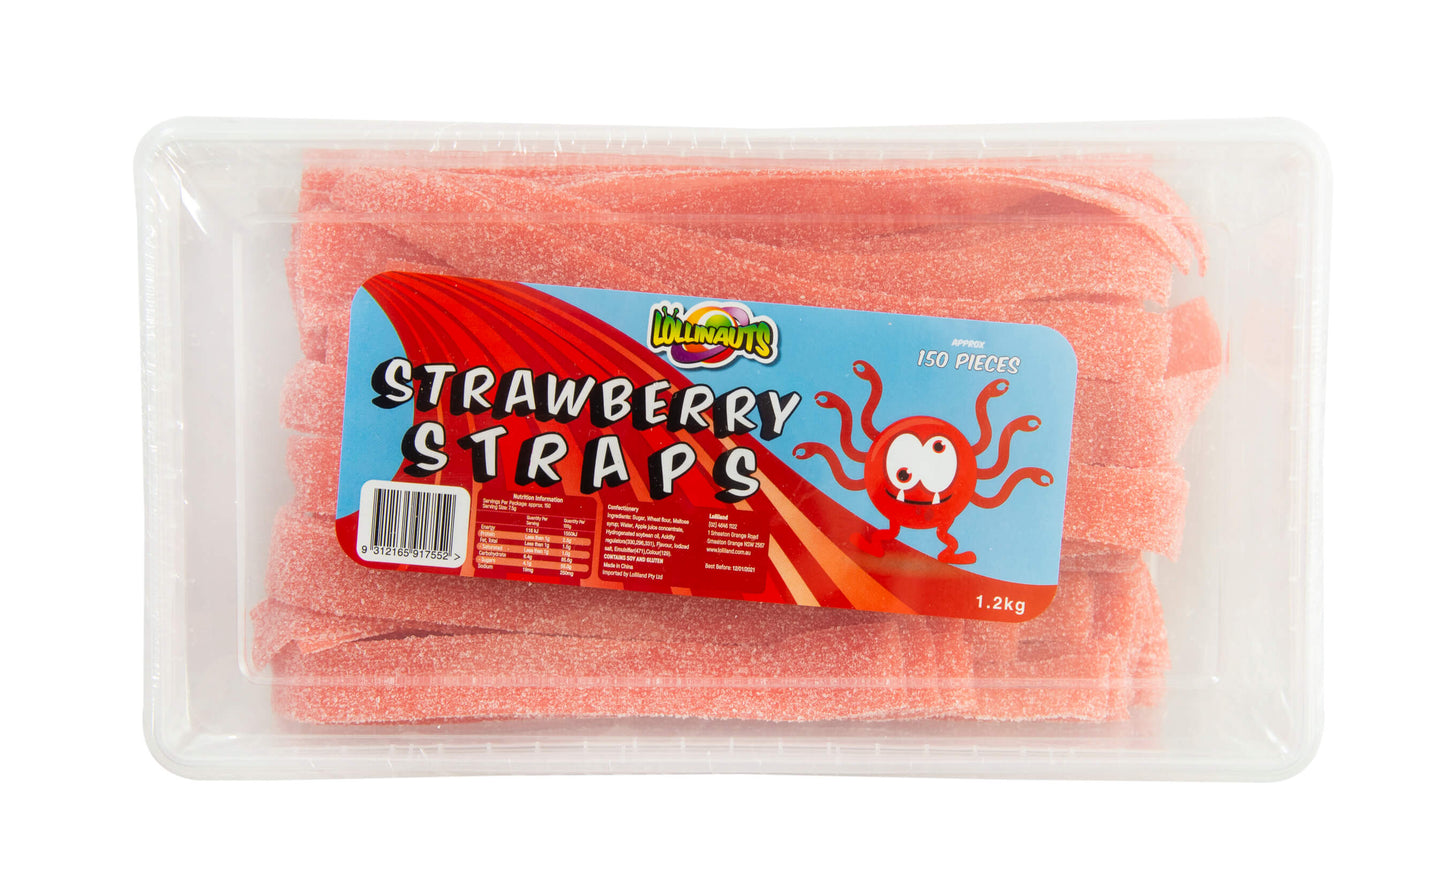 Strawberry Sour Straps - Lollinauts 200G